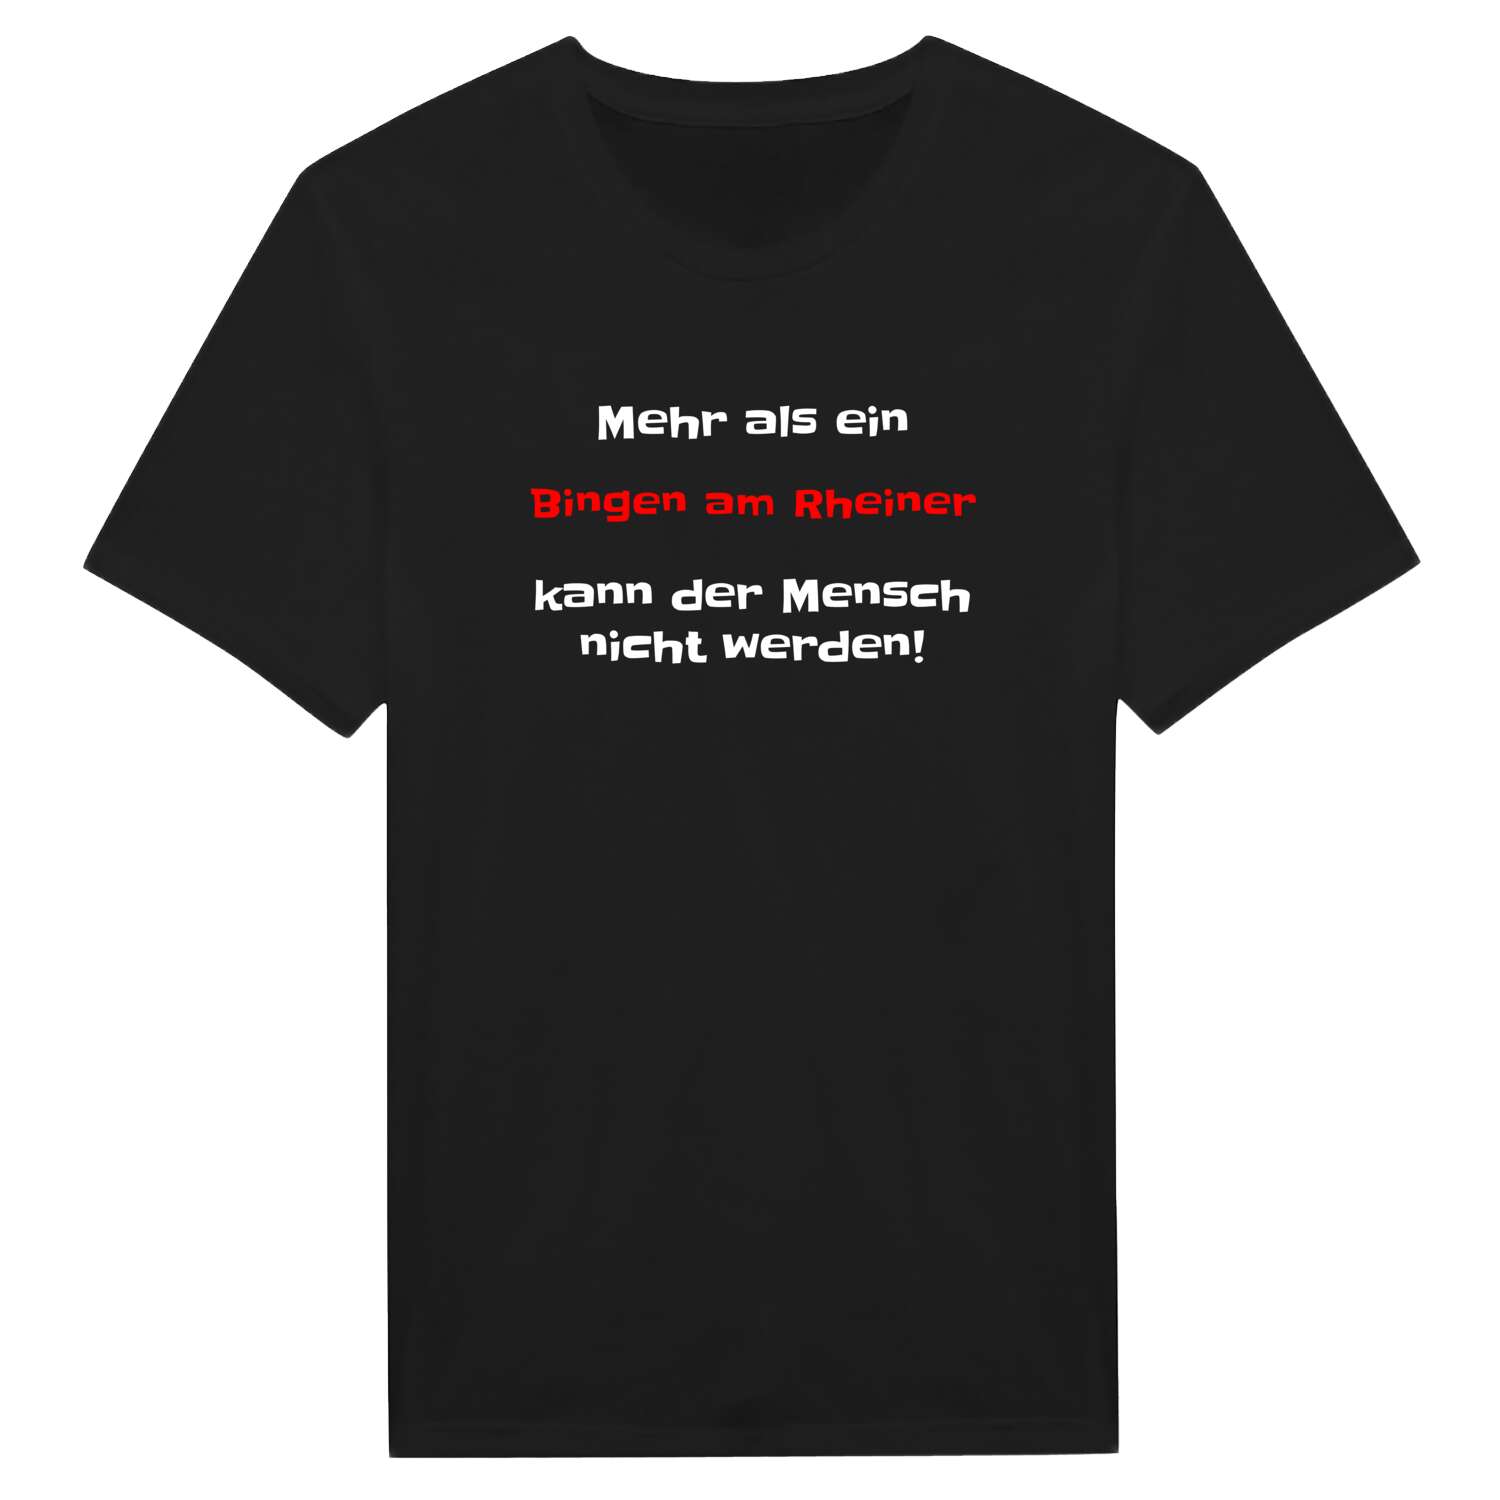 Bingen am Rhein T-Shirt »Mehr als ein«